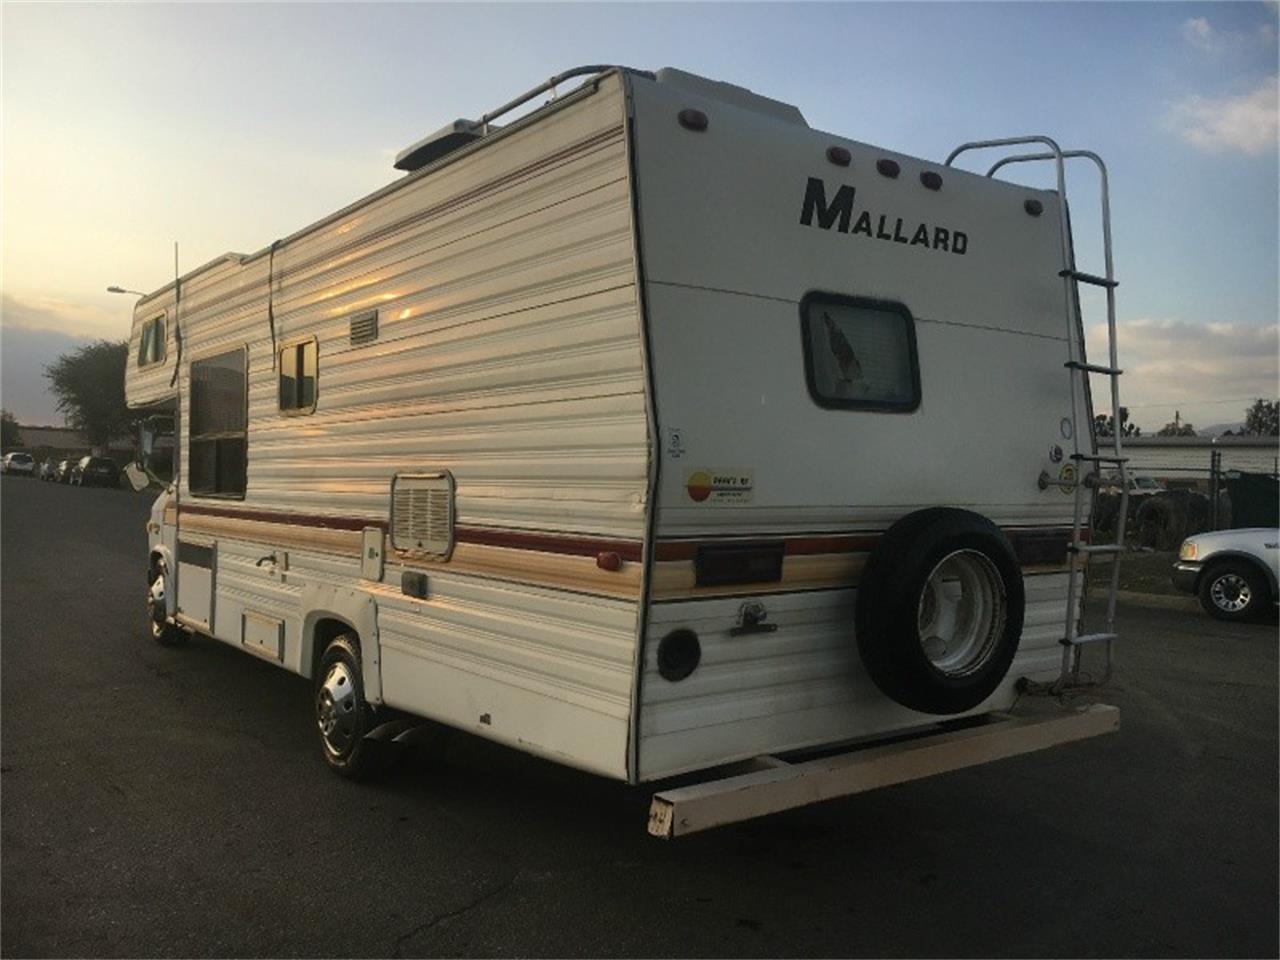 1984 mallard travel trailer weight